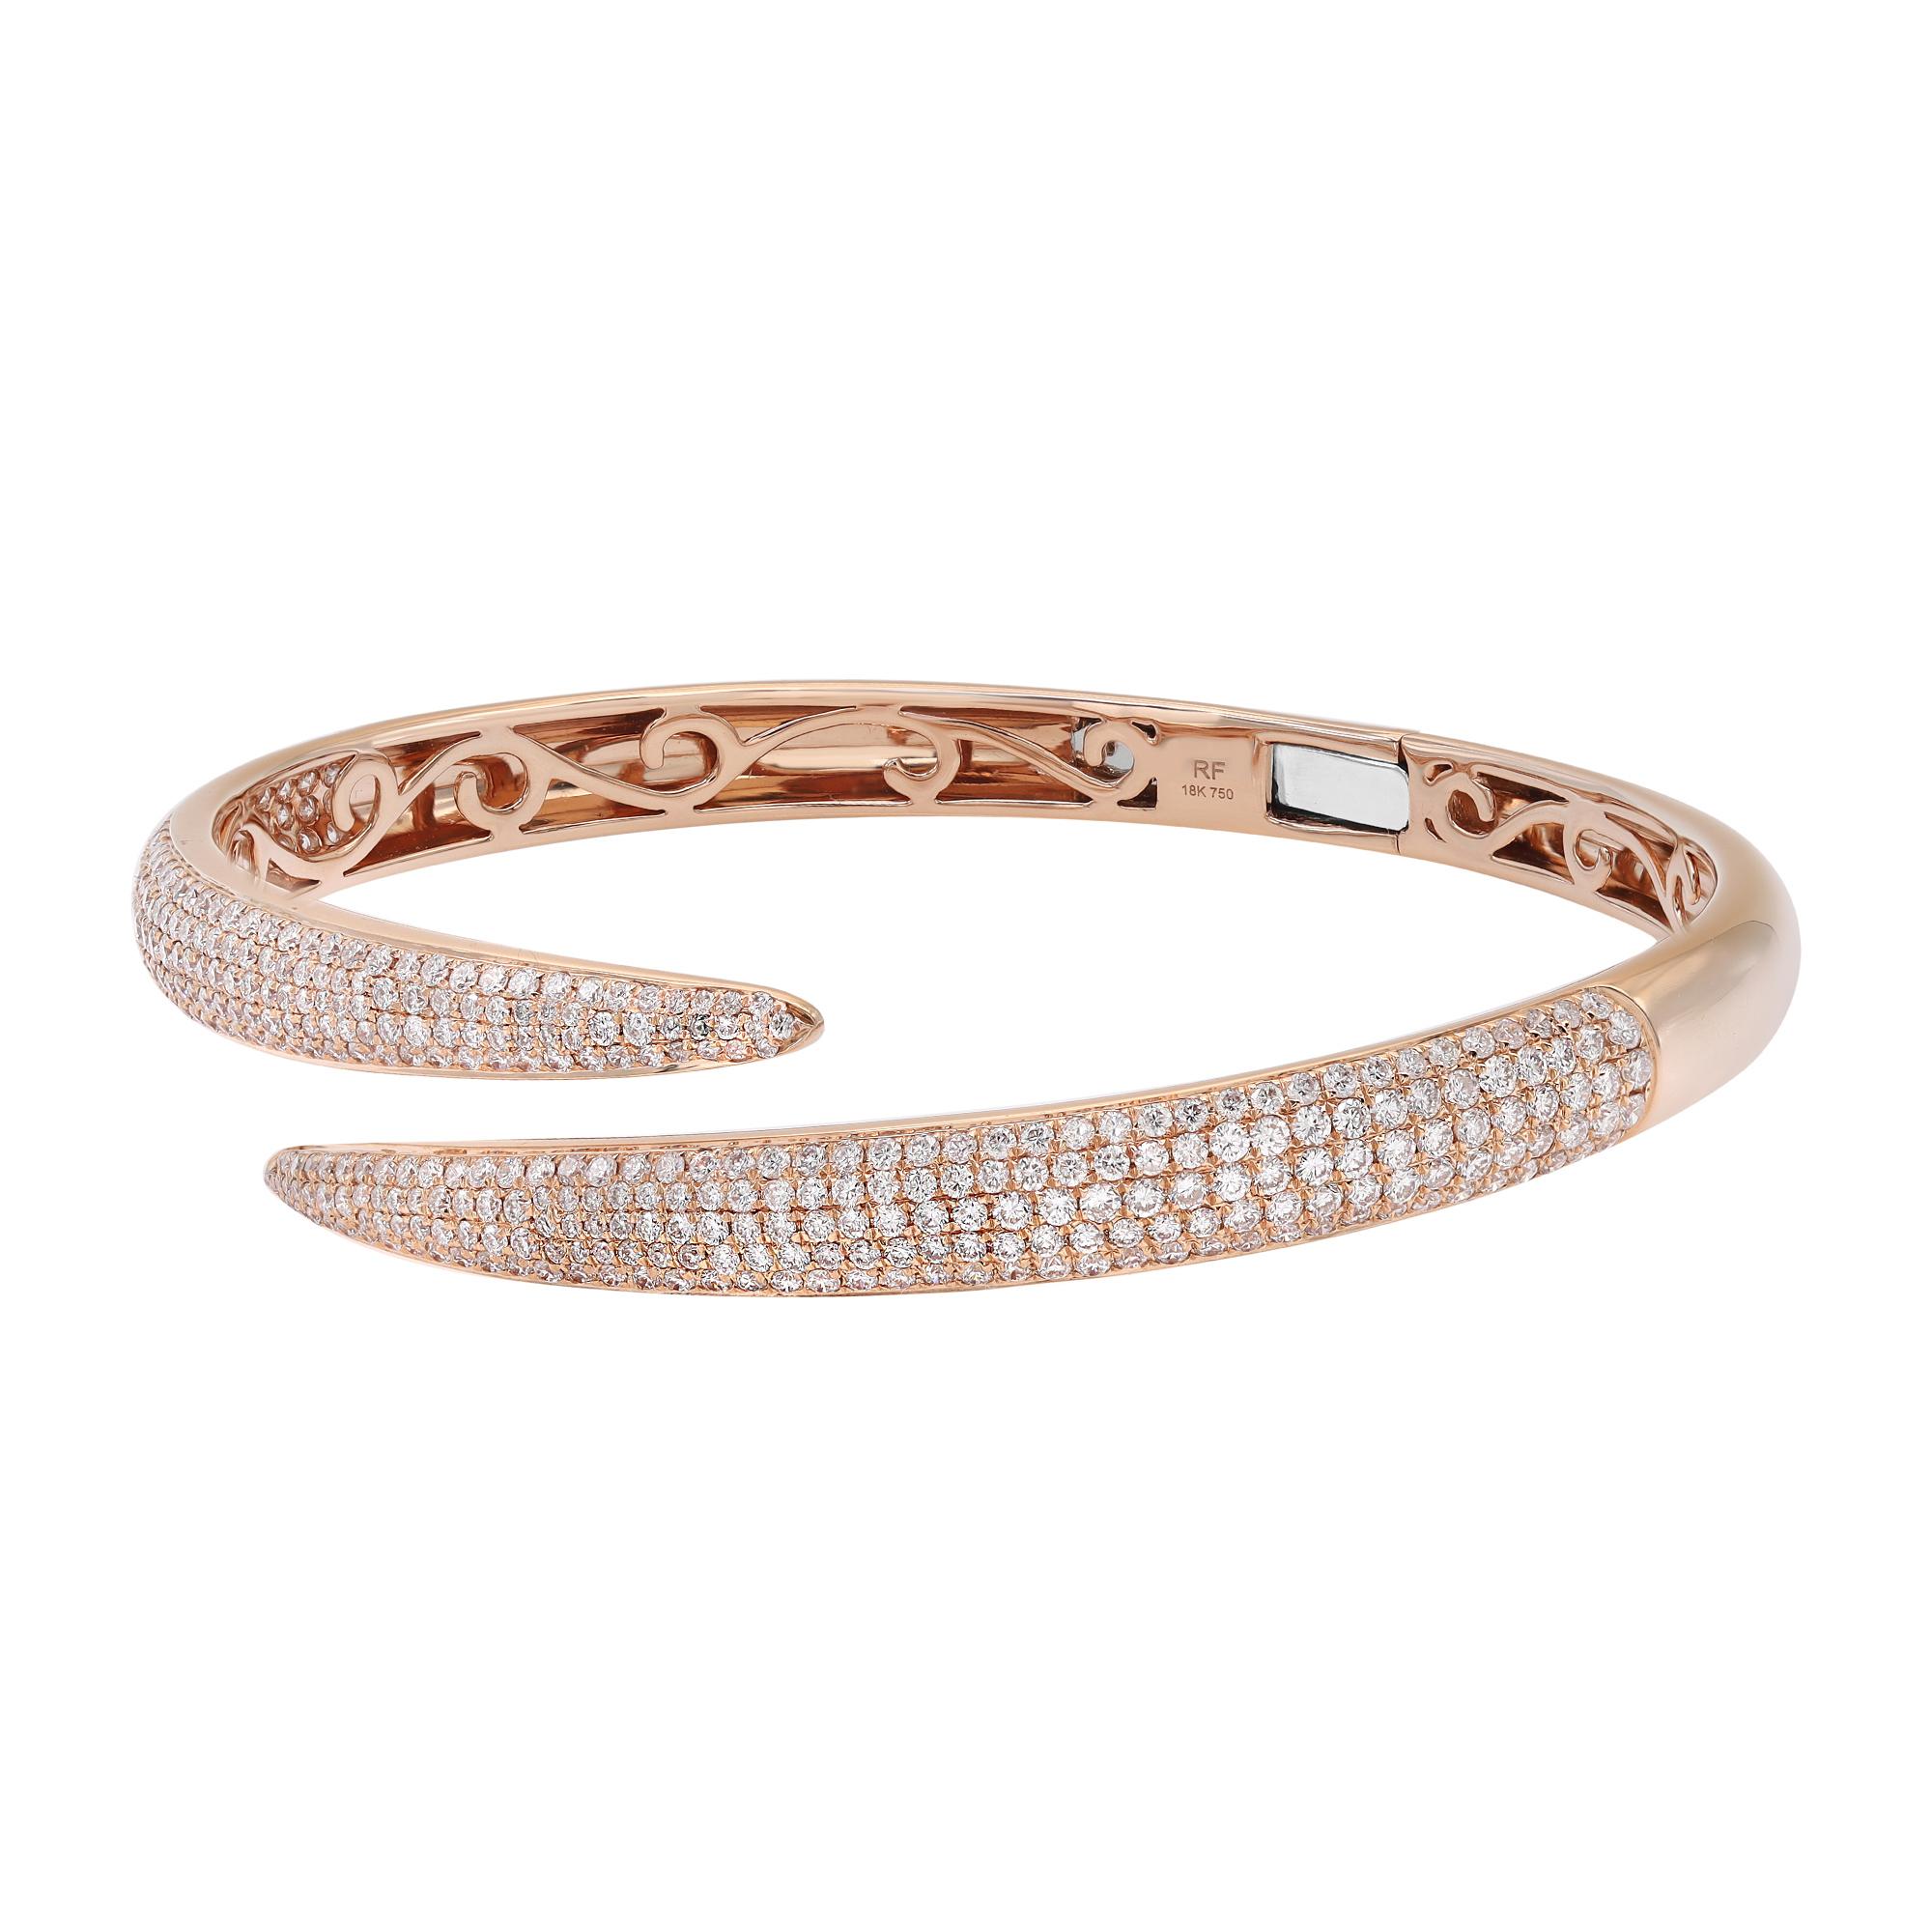 Ein klassischer Look mit schlichter Eleganz - dieser Diamantarmreif strahlt Raffinesse aus. Dieses atemberaubende Armband ist aus 18 Karat Roségold gefertigt und mit winzigen weißen, runden Diamanten mit einem Gesamtgewicht von 2,68 Karat besetzt.